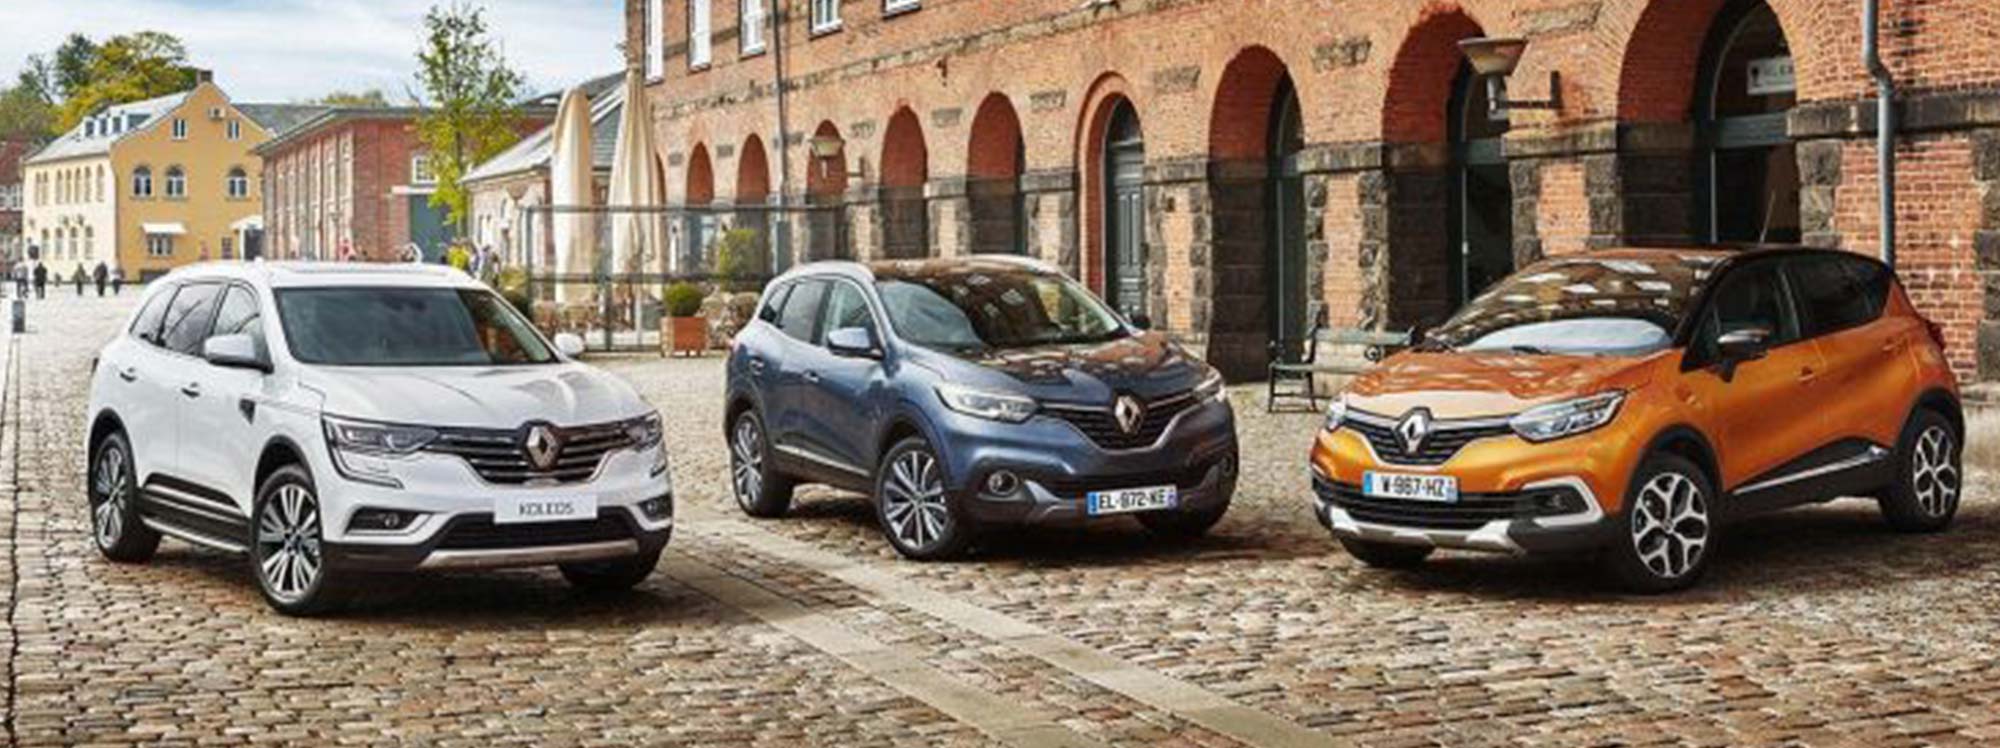 Renault exhibió su gama renovada de vehículos